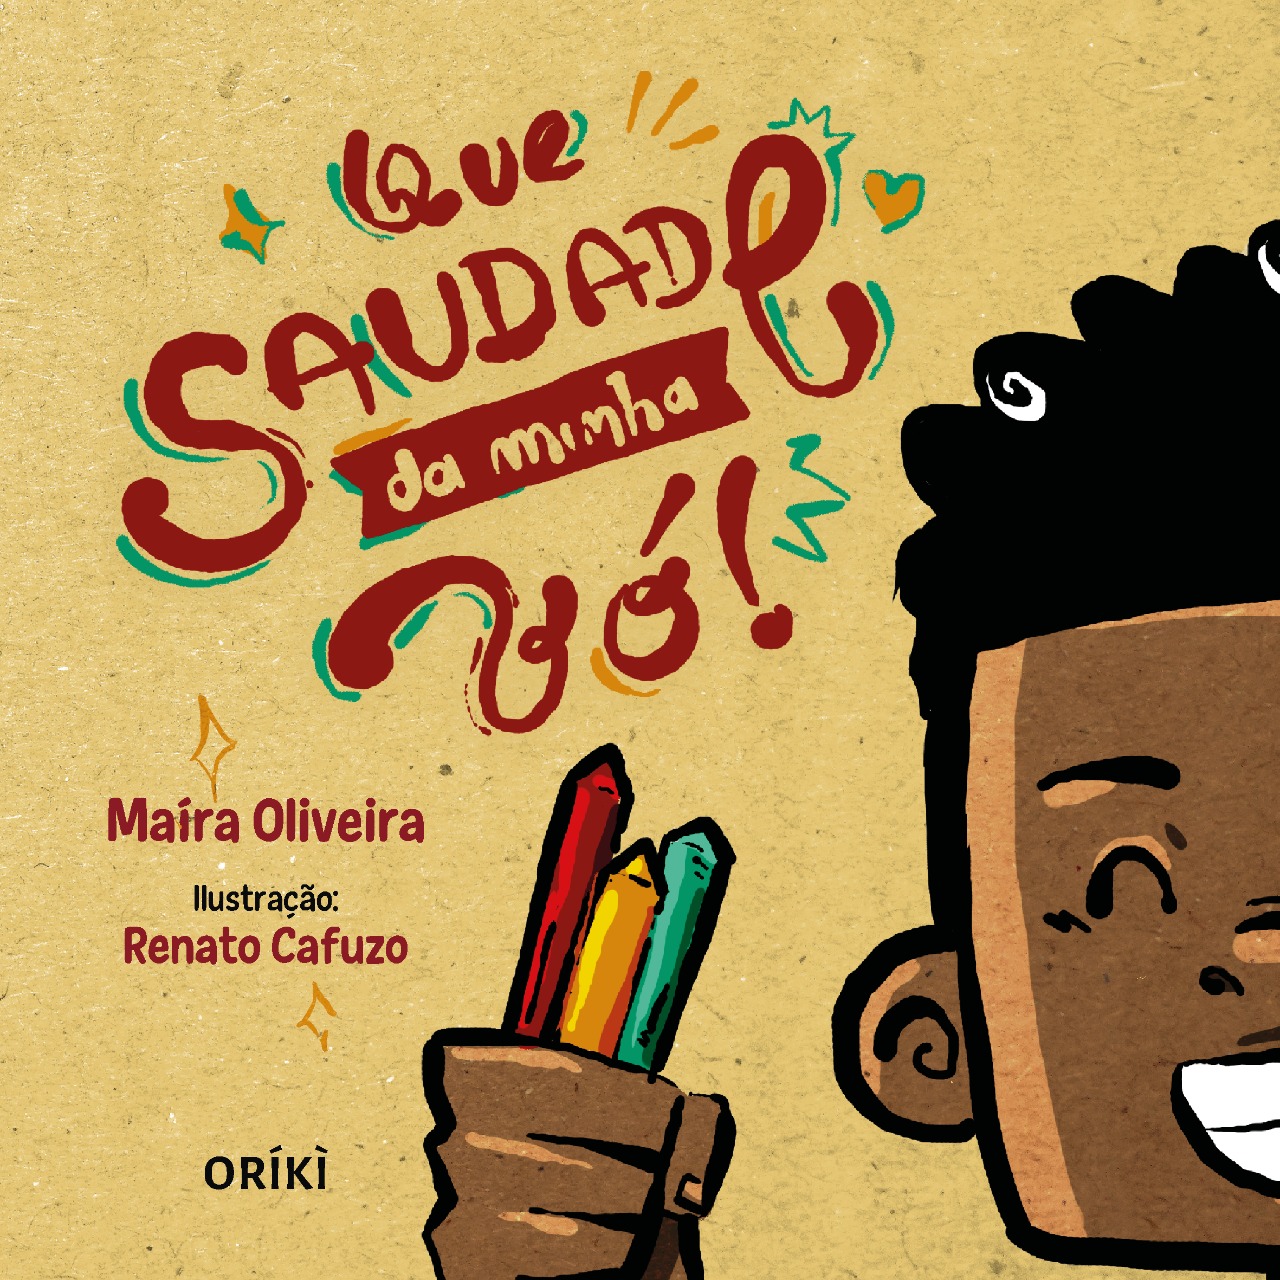 Capa do livro “Que saudade da minha vó”, Maíra Oliveira e Renato Cafuzo. Metade do rosto de um menino negro junto de uma de suas mãos, que está segurando três gizes coloridos: vermelho, amarelo e verde.